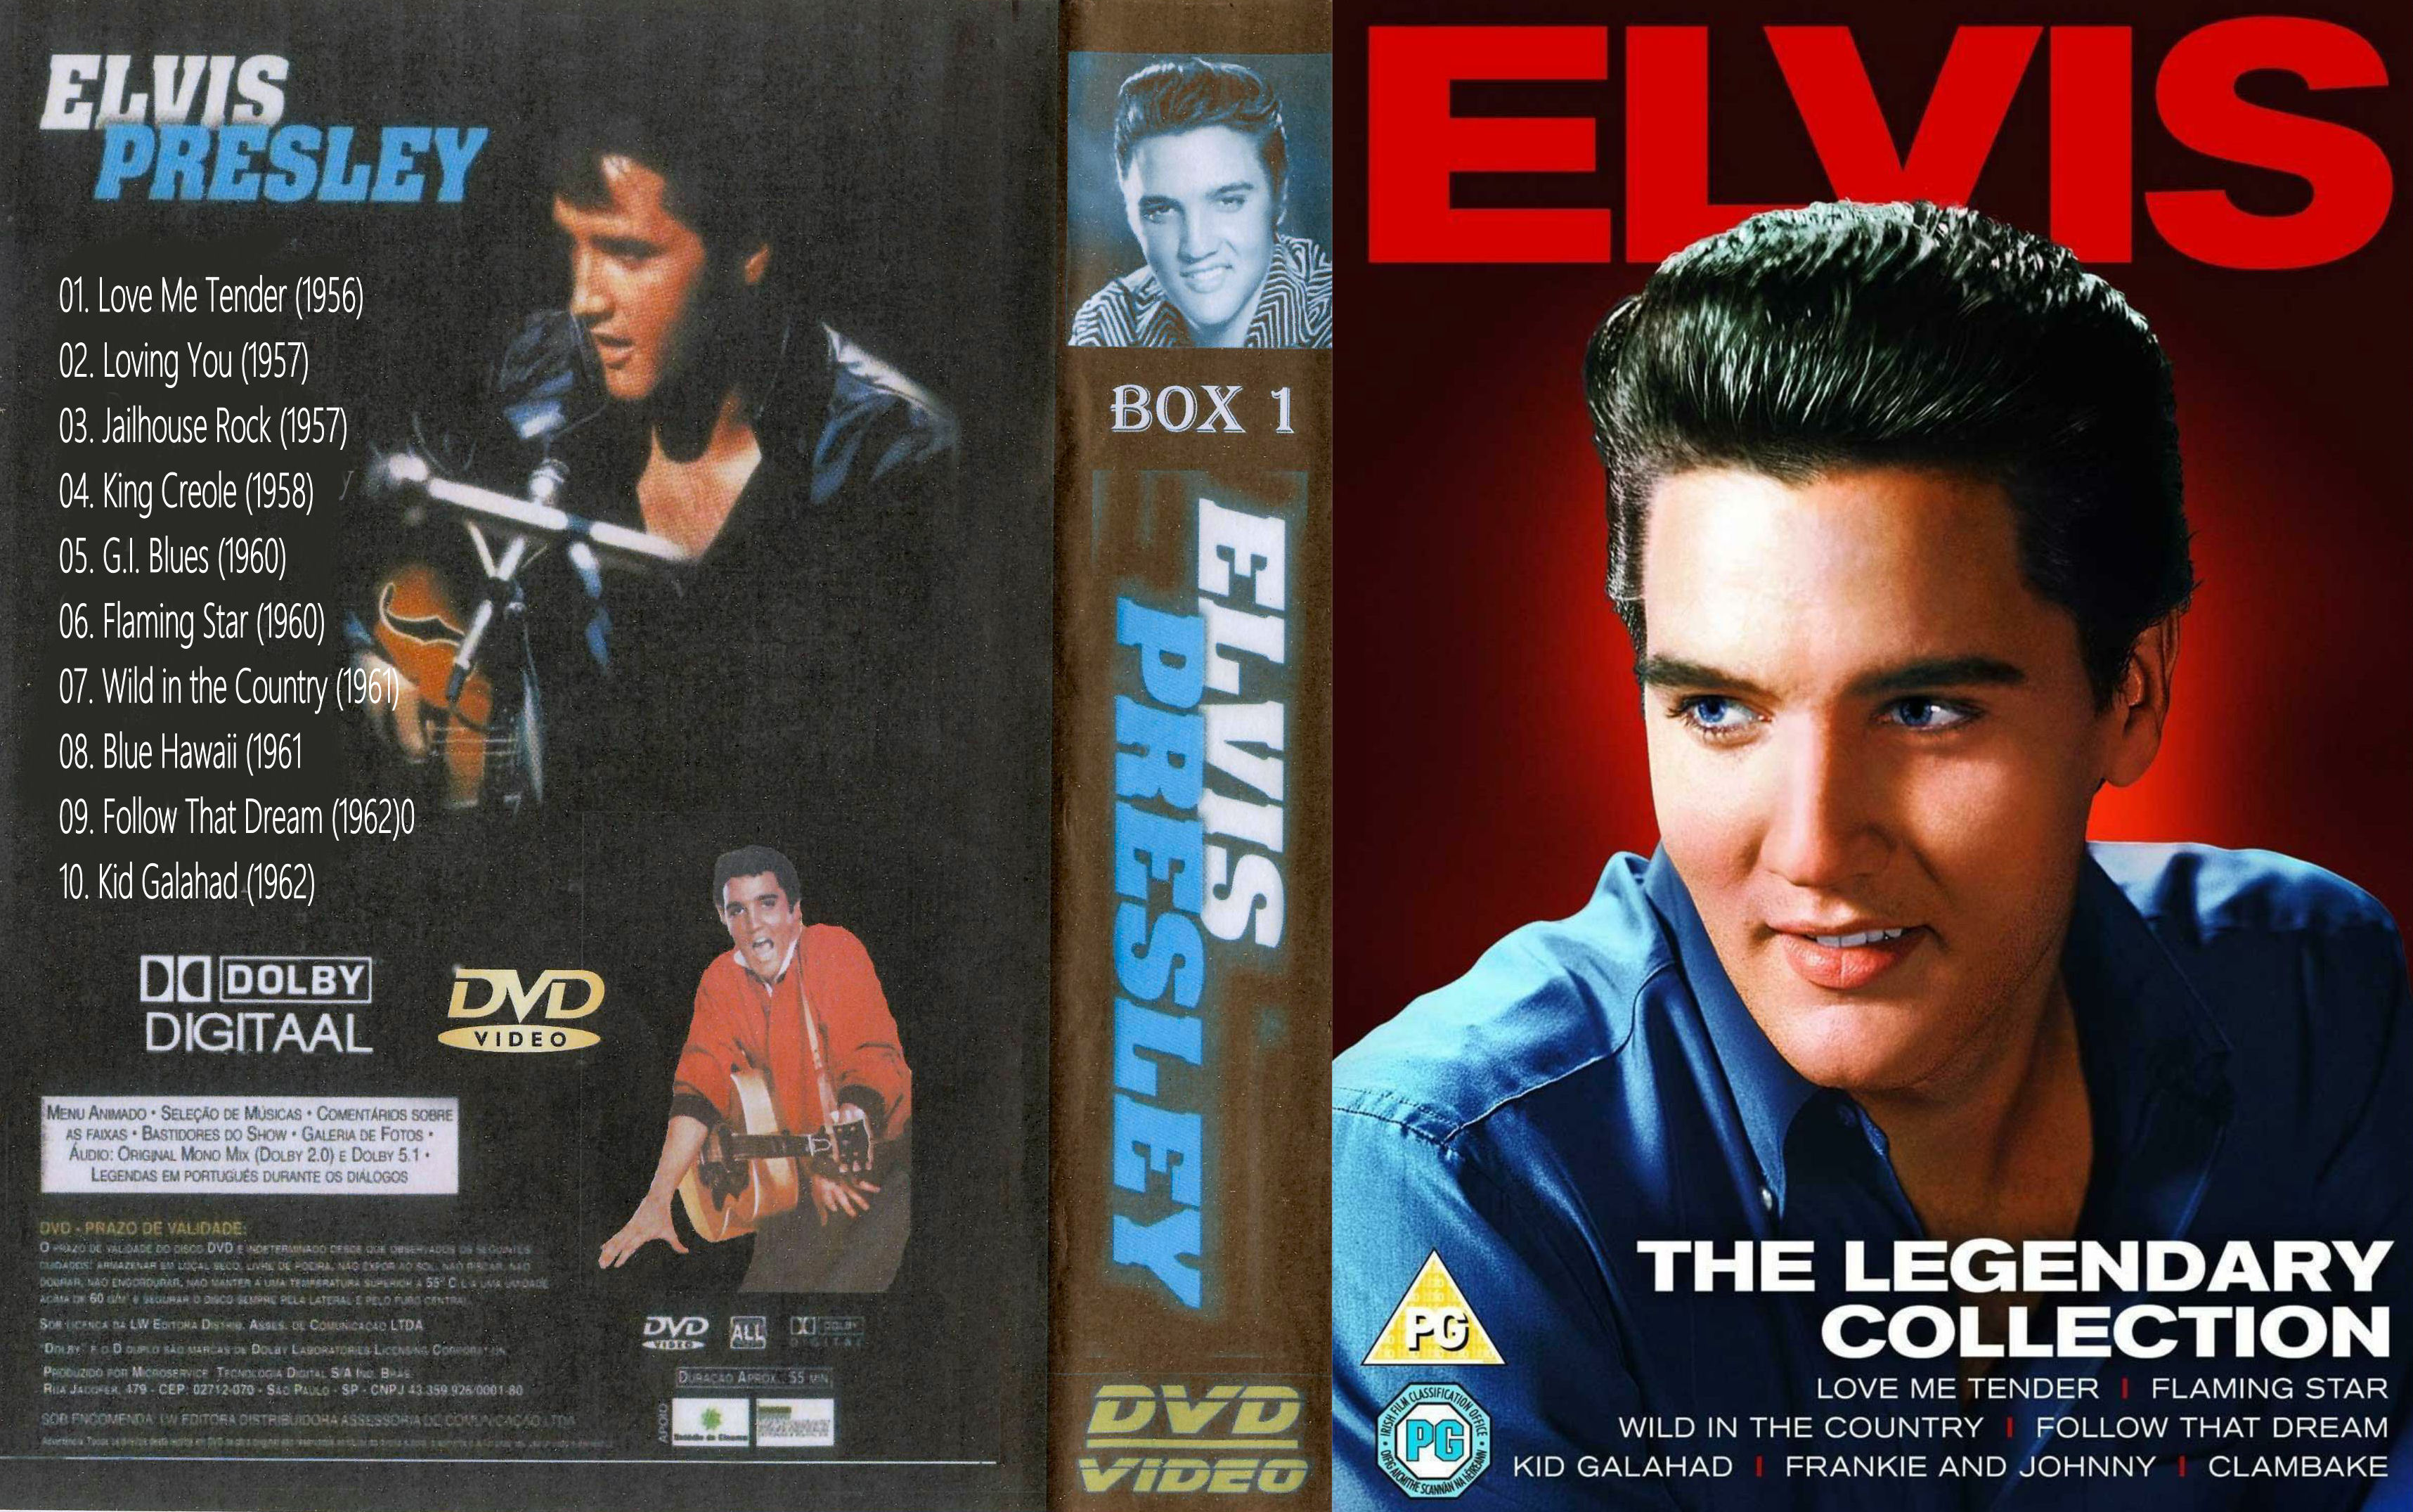 Elvis Presley Collectie ( 07 - Wild in the Country ) DvD 7 van 31